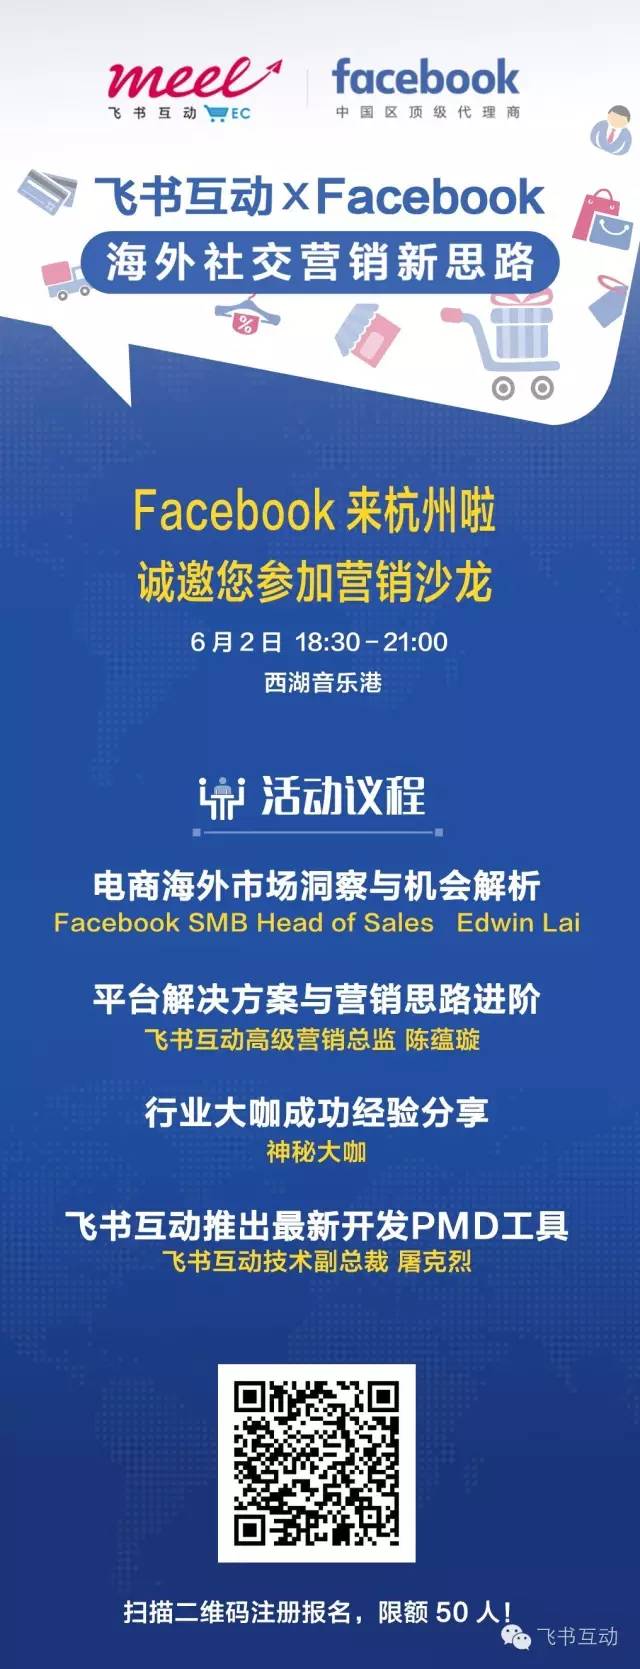 Facebook来到杭州电商营销沙龙分析公司海外营销和跨境电商政策